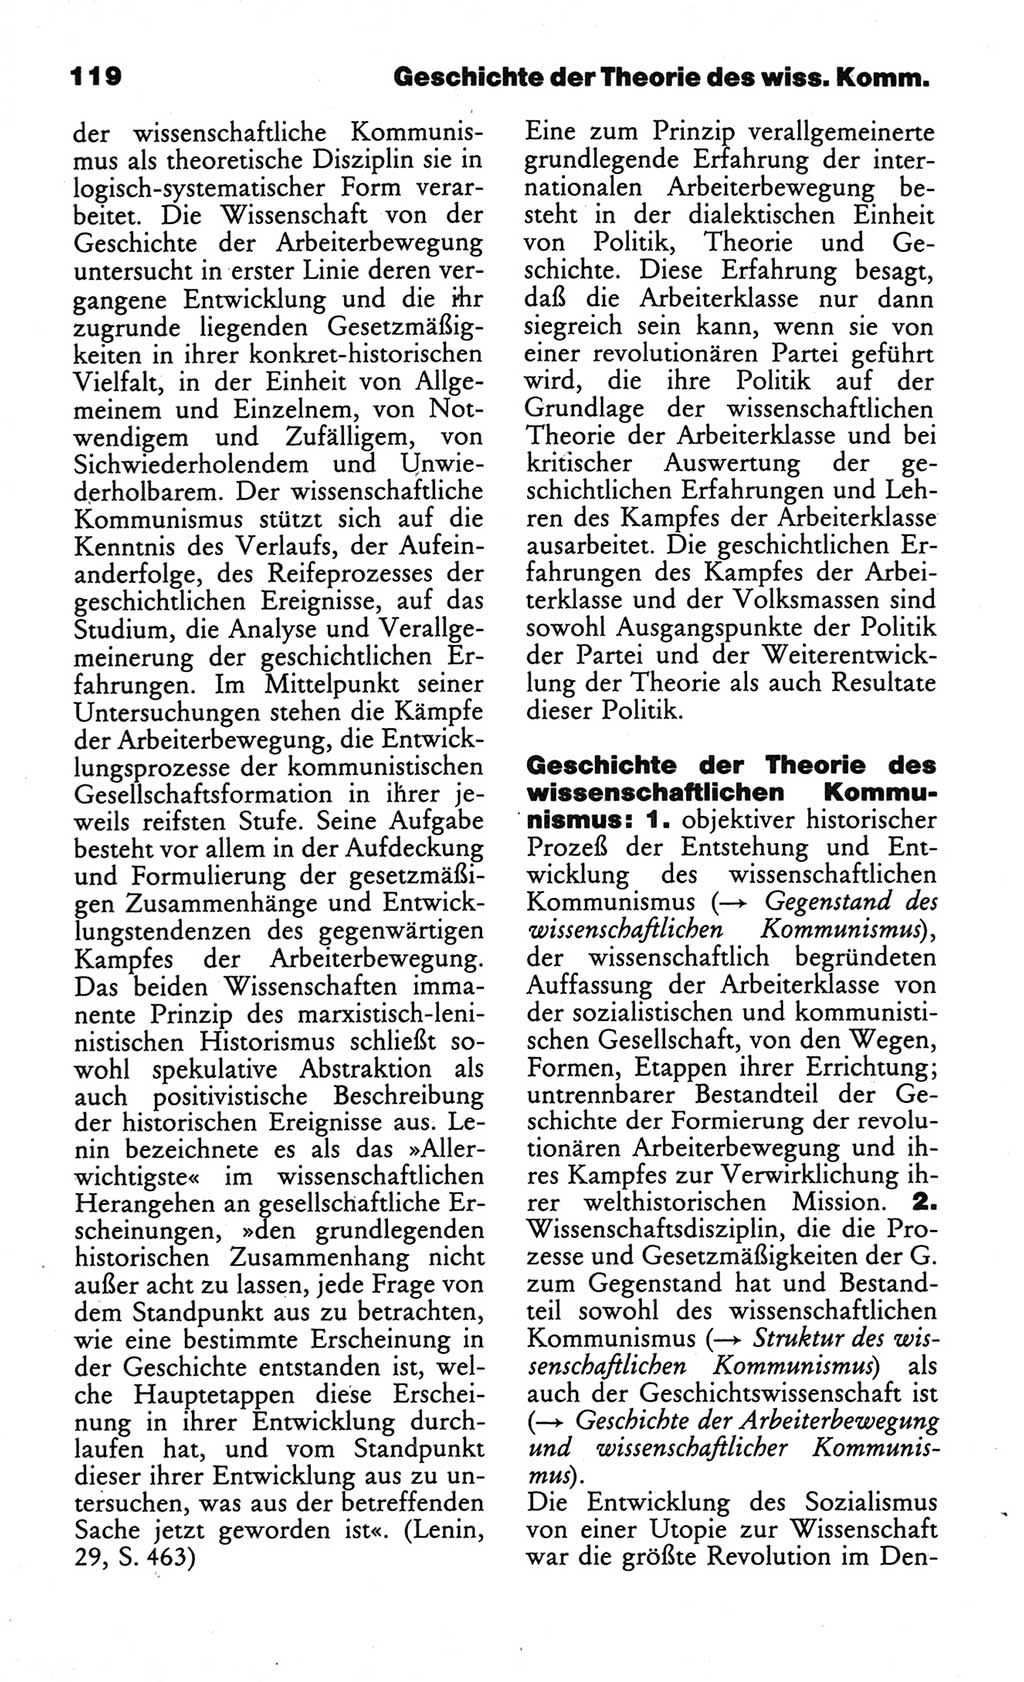 Wörterbuch des wissenschaftlichen Kommunismus [Deutsche Demokratische Republik (DDR)] 1984, Seite 119 (Wb. wiss. Komm. DDR 1984, S. 119)